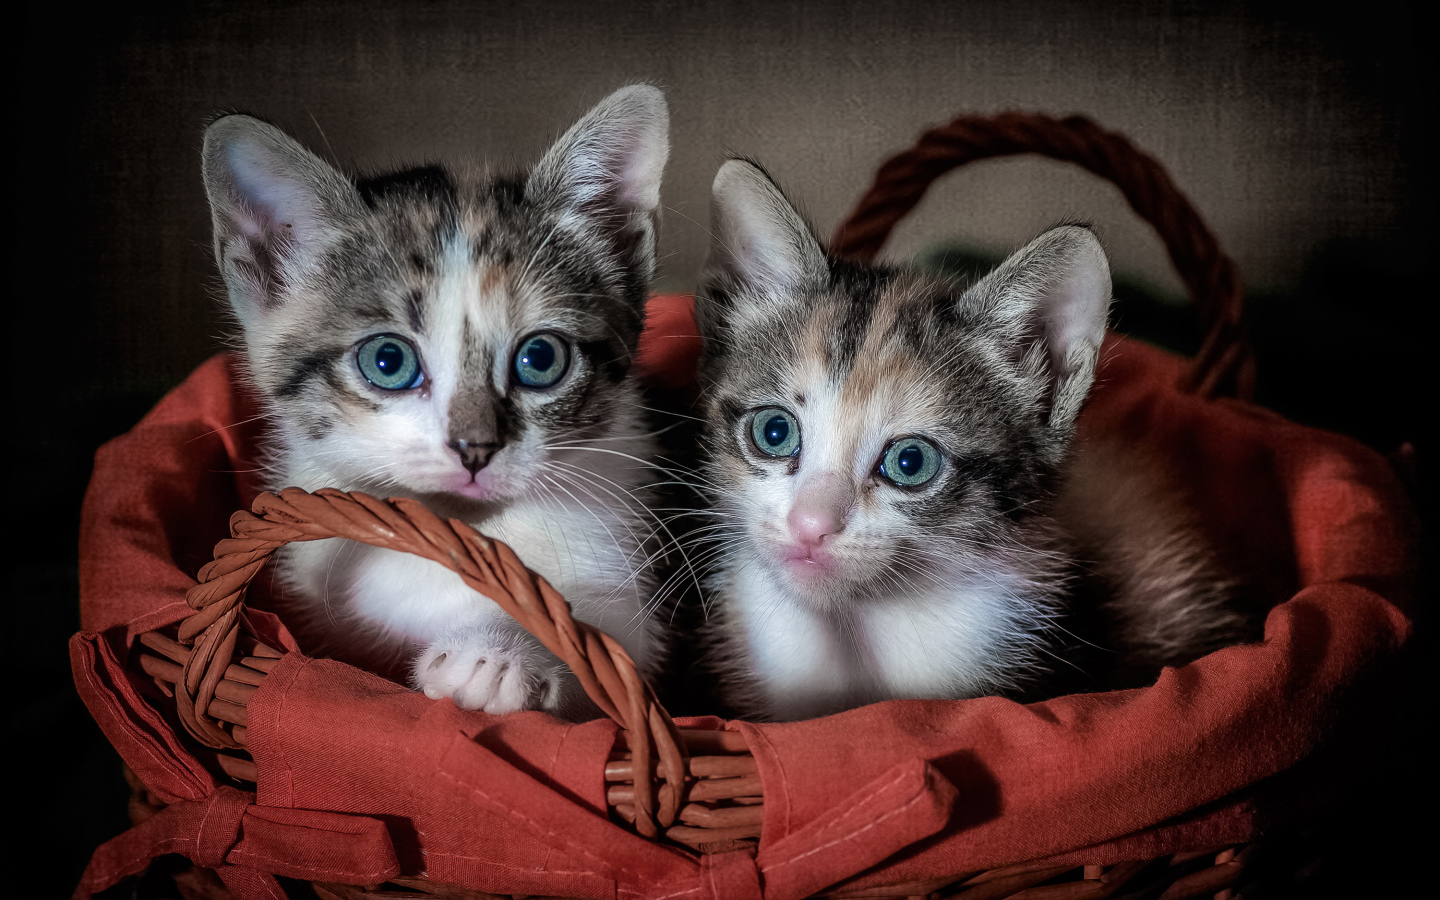 Two little kittens in a big basket